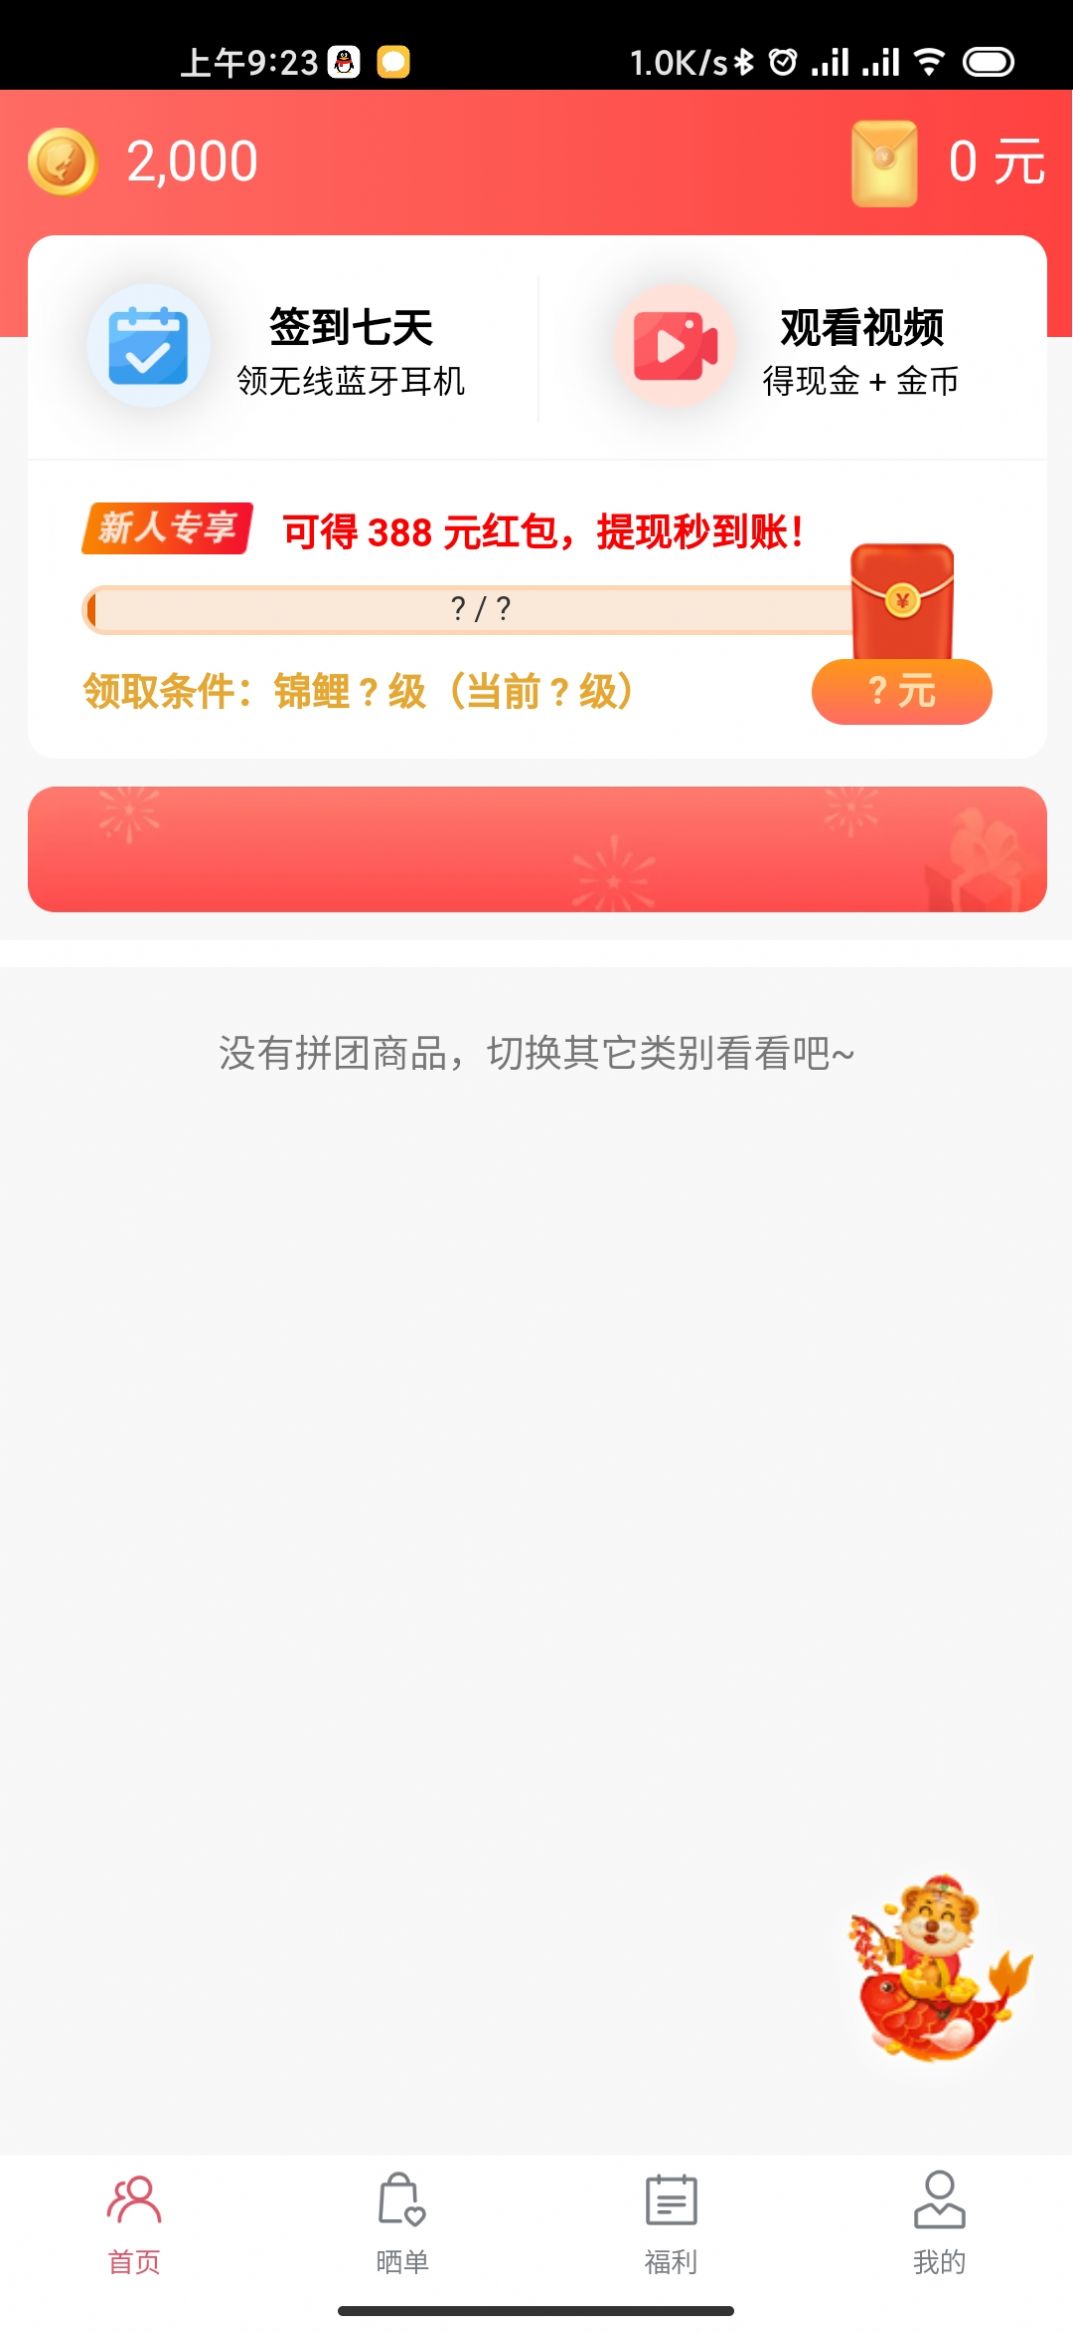 锦鲤拼拼购物App手机客户端图片1